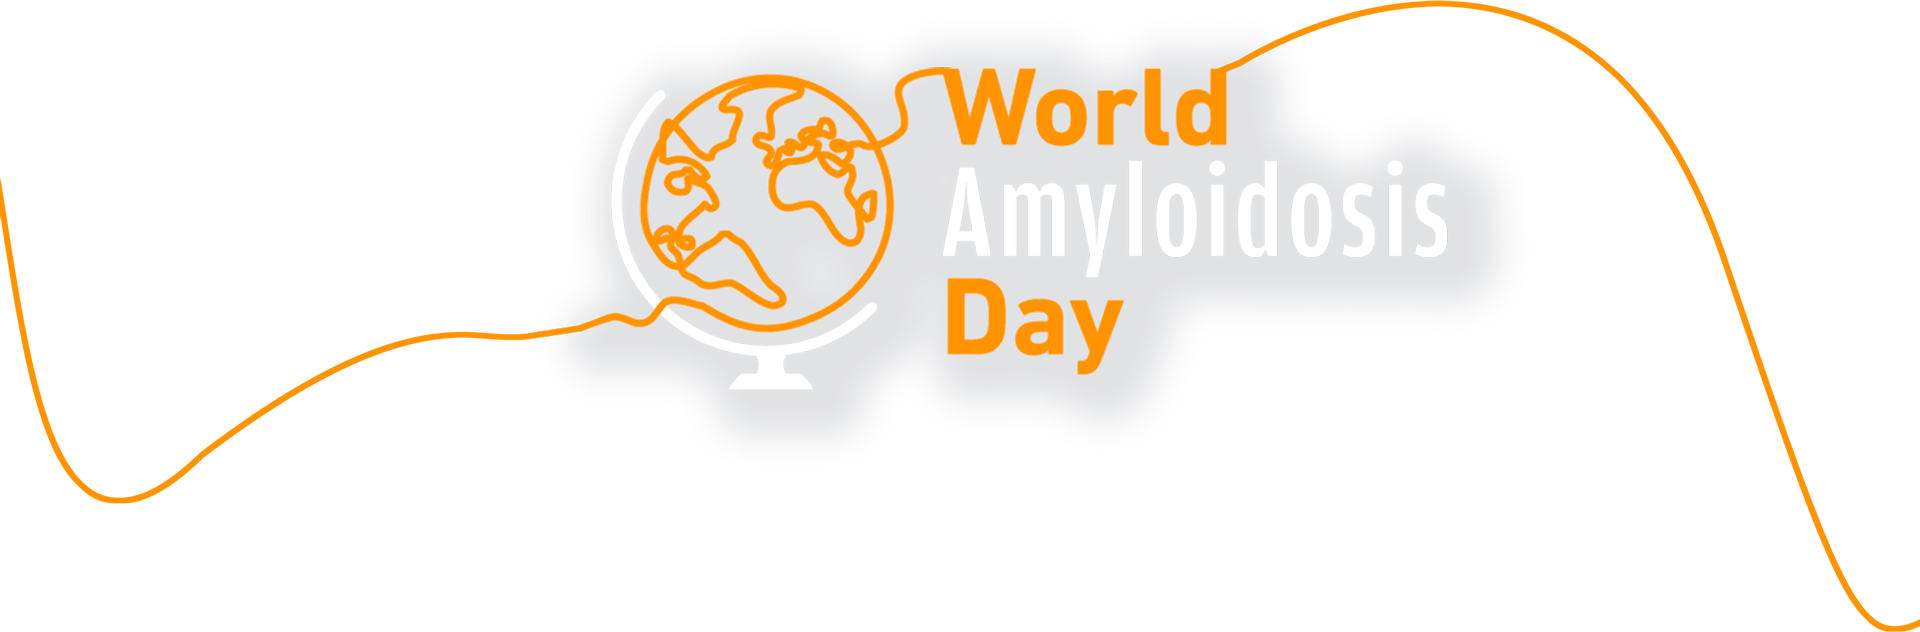 Segundo Dia Mundial da Amiloidose